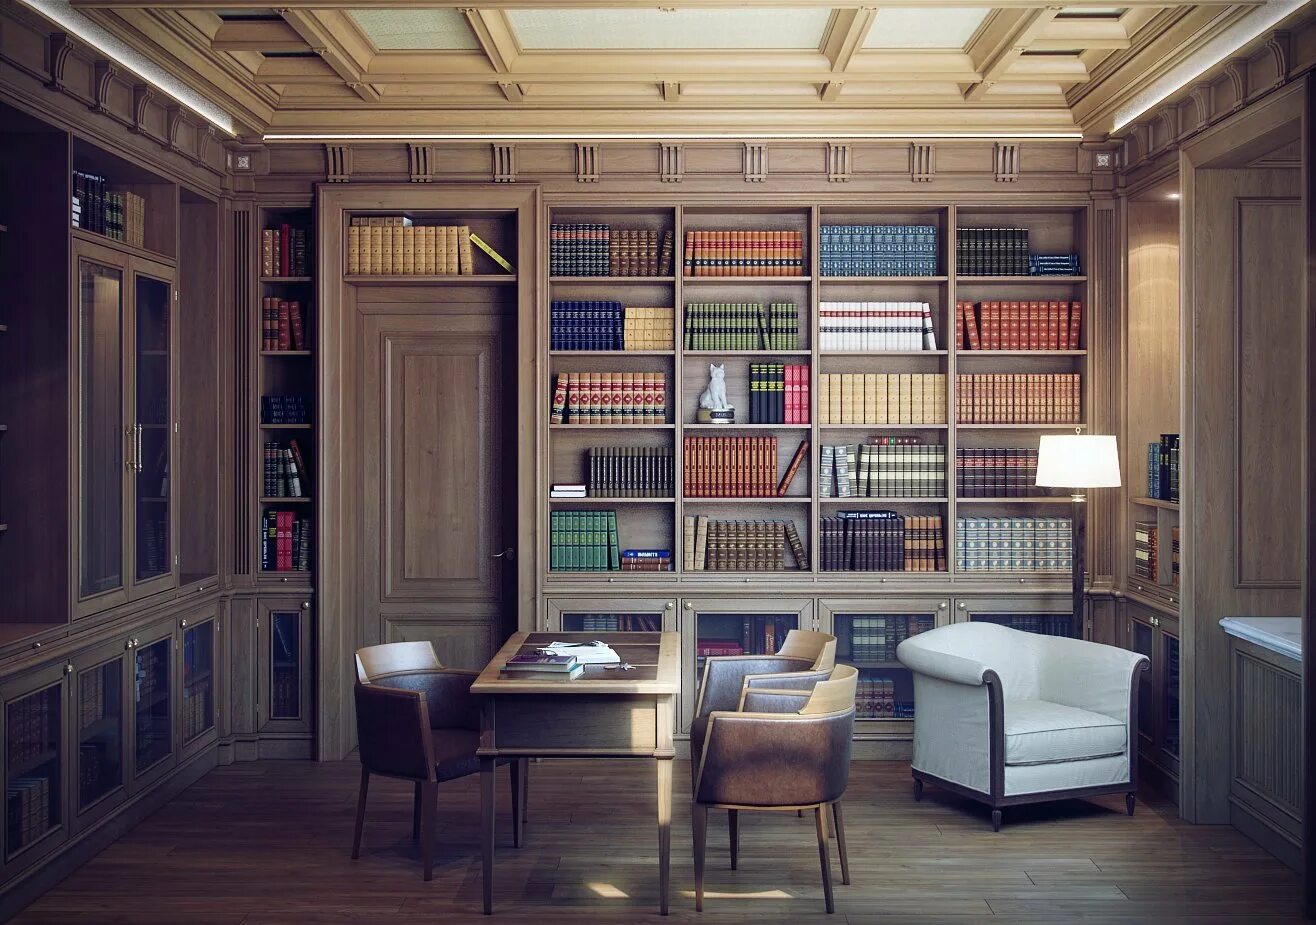 Мини библиотека с вб. Комната с книжным шкафом. Комната с книжными полками. Кабинет с библиотекой в доме. Домашняя библиотека интерьер.